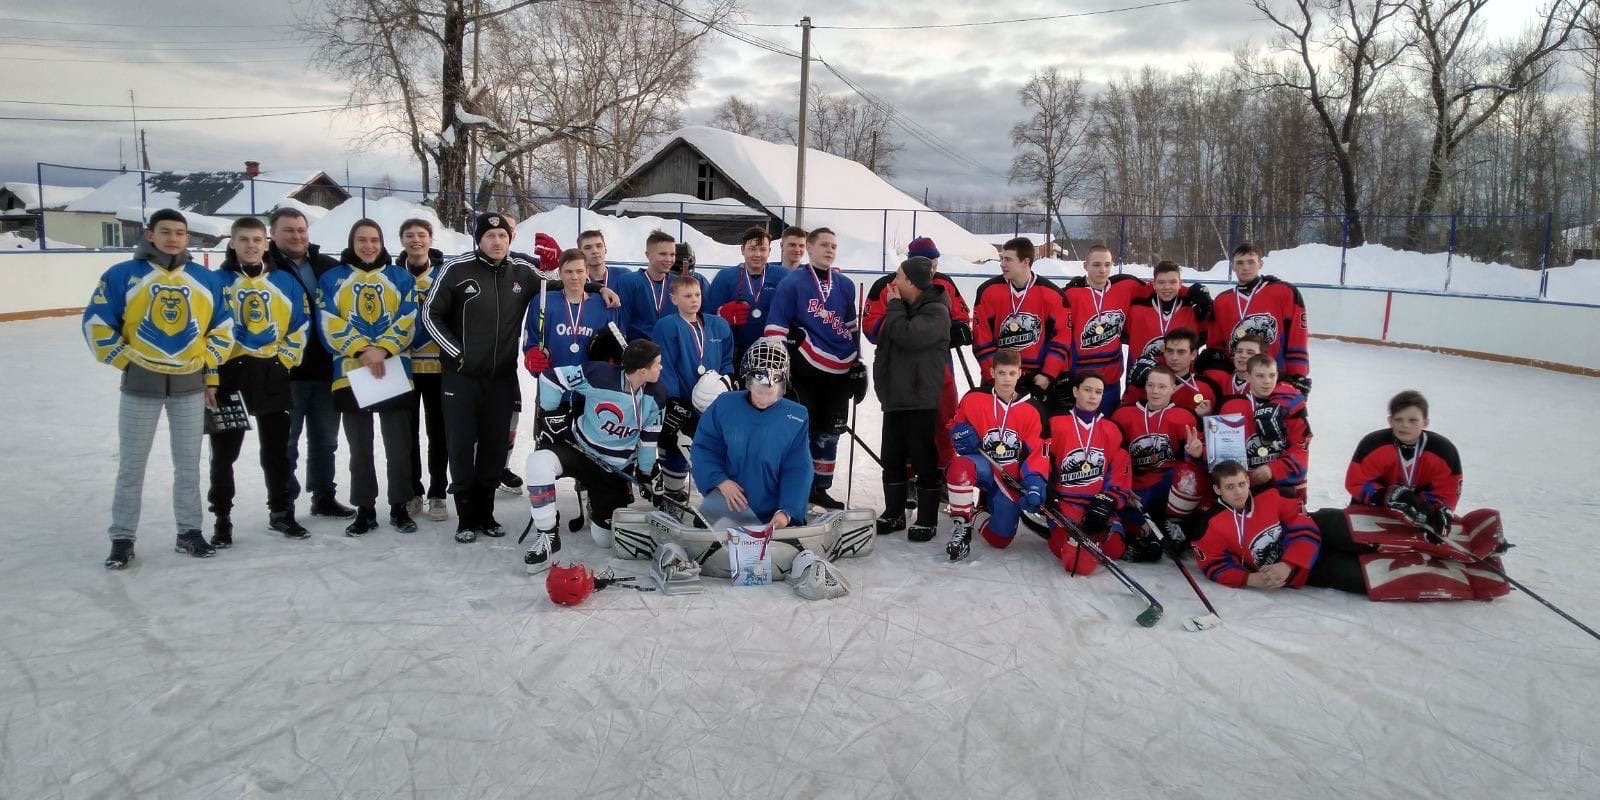 3 марта 2021 г. на хоккейном корте п. Тюлькино состоялся заключительный матч в рамках Открытого первенства СГО по хоккею среди поселковых команд